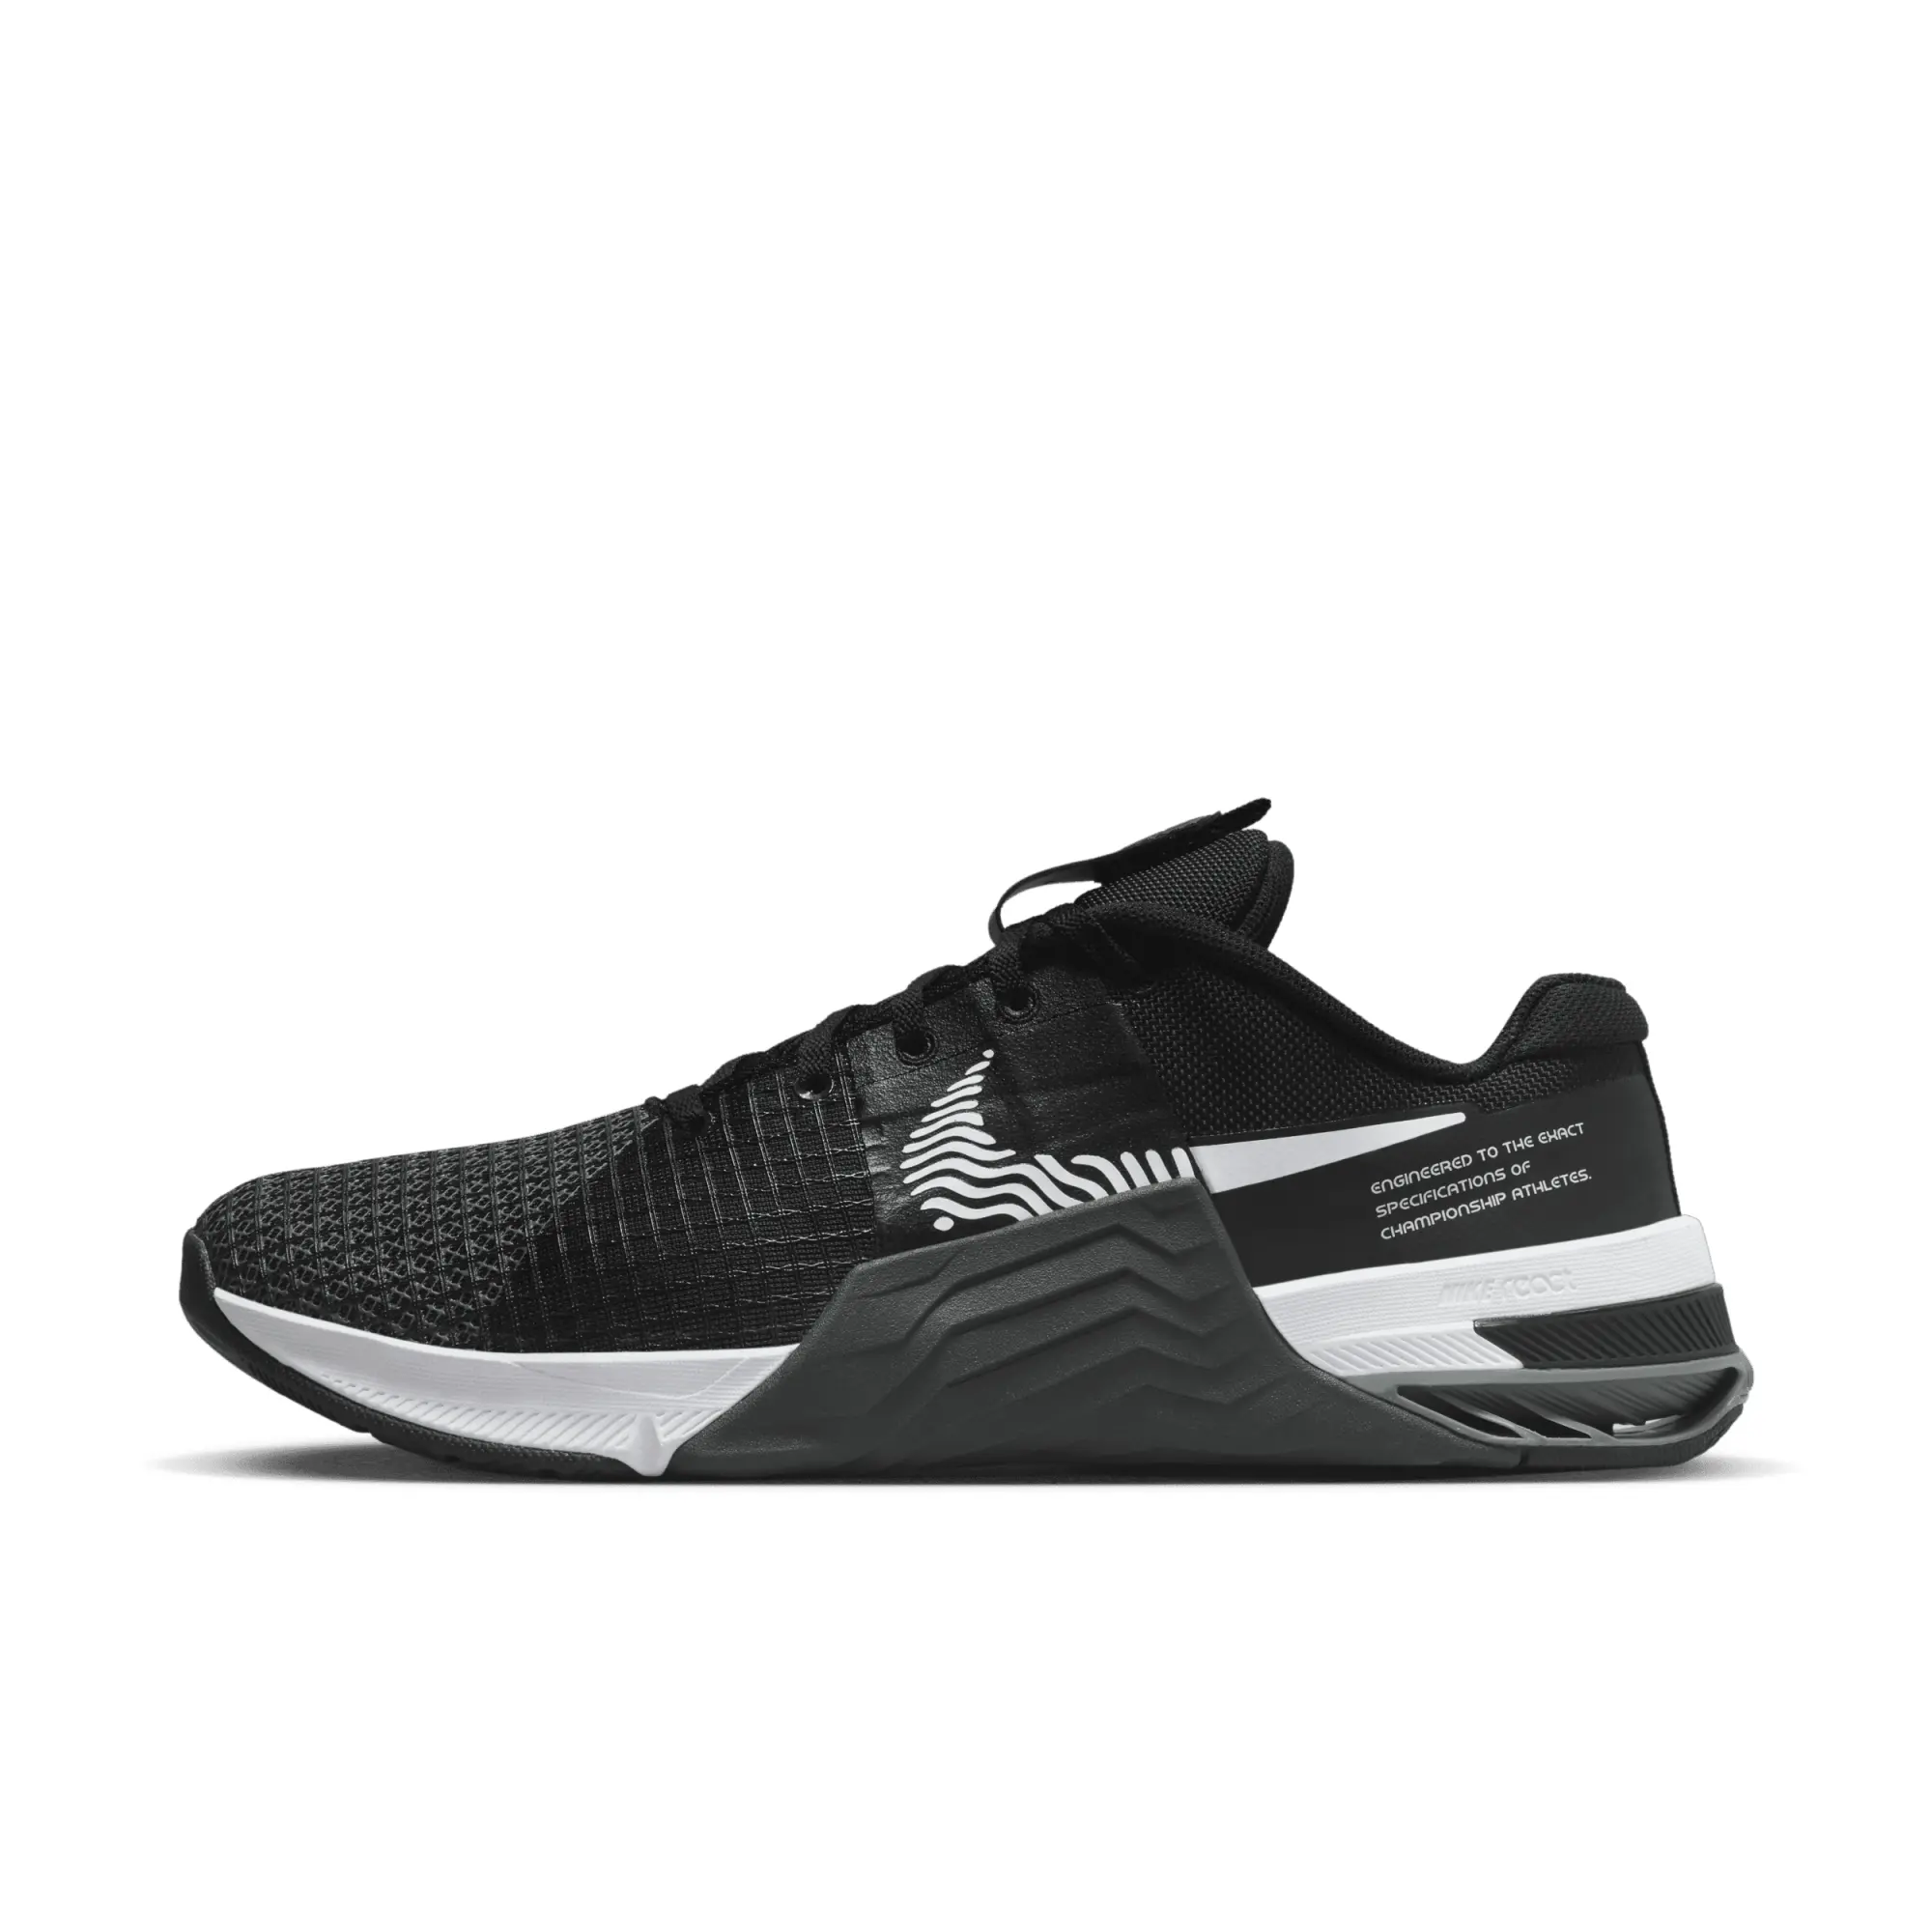 Nike Metcon 8 - Black/White/Grey, Black/White/Grey